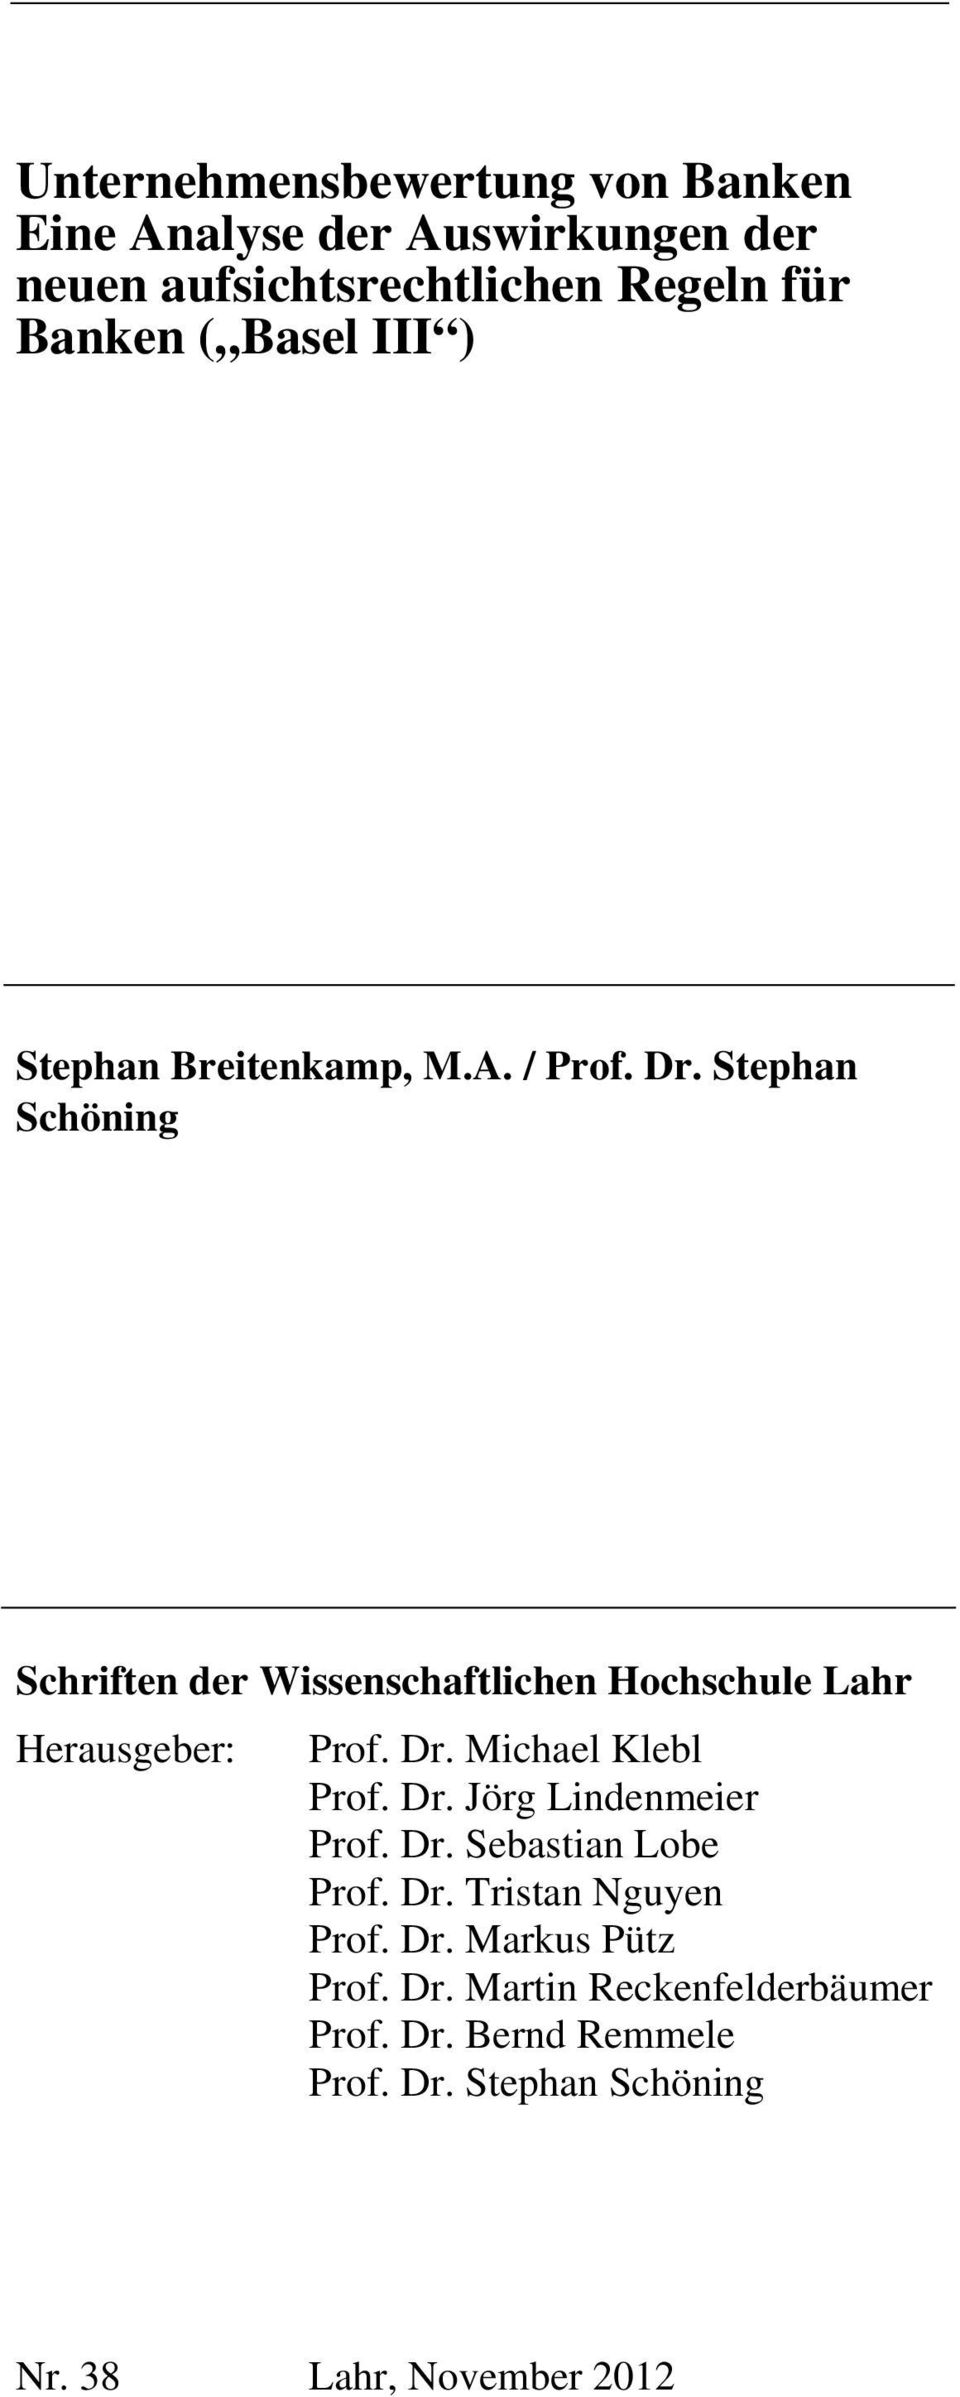 Stephan Schöning Schriften der Wissenschaftlichen Hochschule Lahr Herausgeber: Prof. Dr. Michael Klebl Prof. Dr. Jörg Lindenmeier Prof.